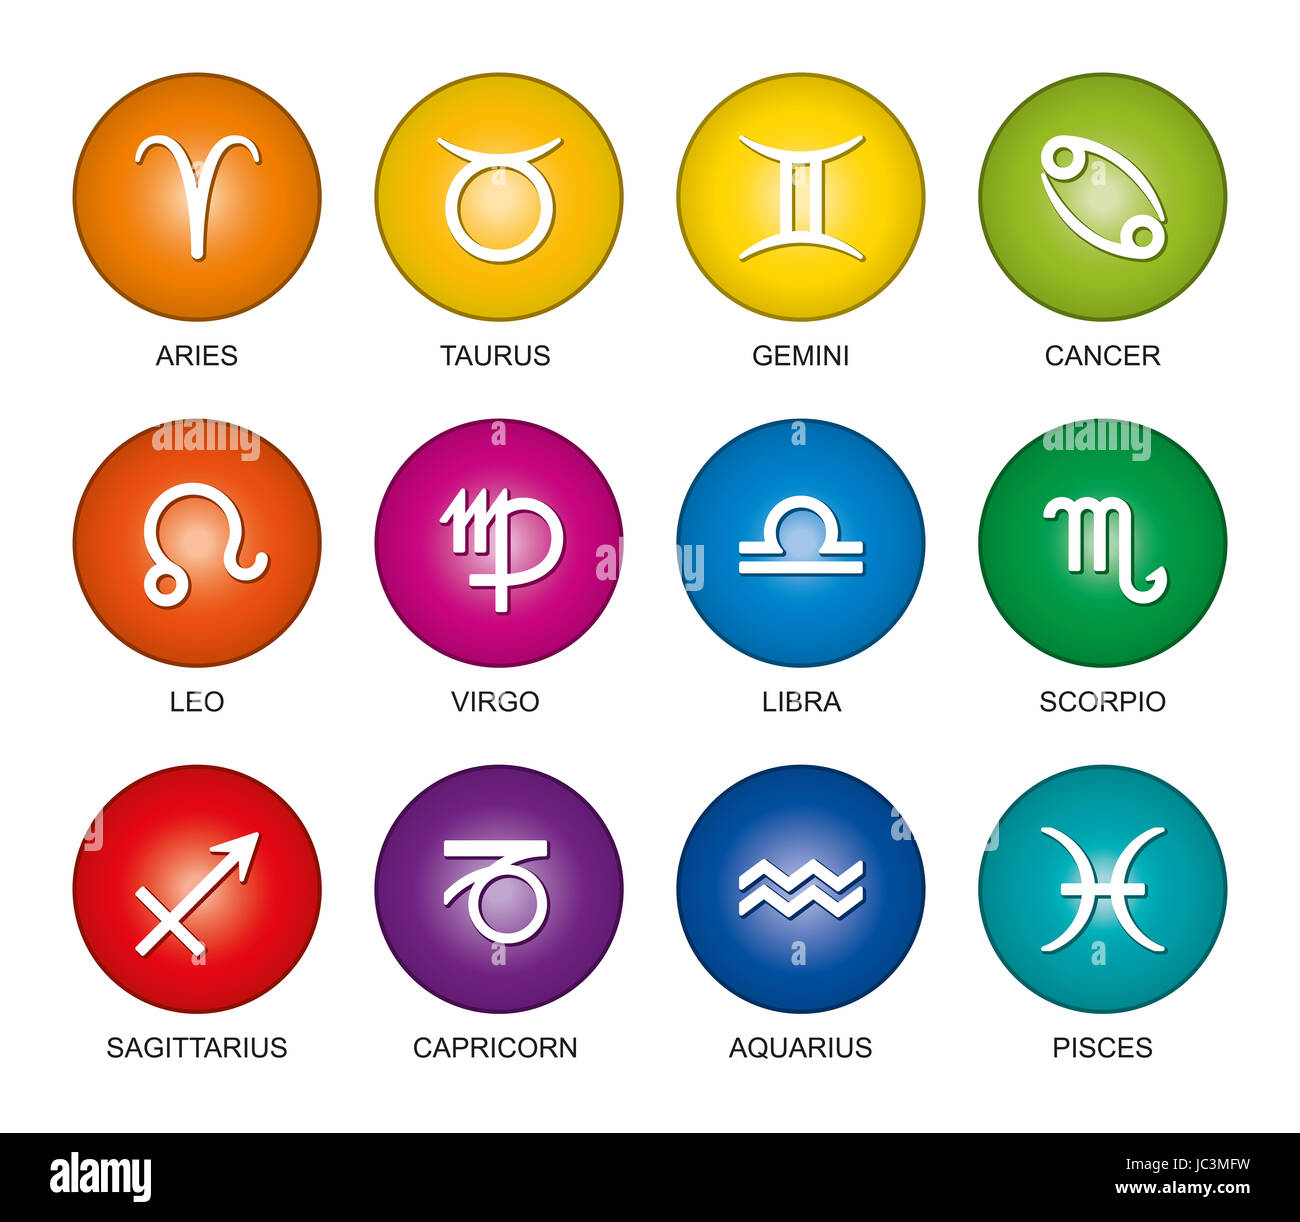 Segni astrologici dello zodiaco in arcobaleno gradienti di colore. Dodici cerchi con star sign simboli in colori luminosi e i loro nomi in inglese. Foto Stock